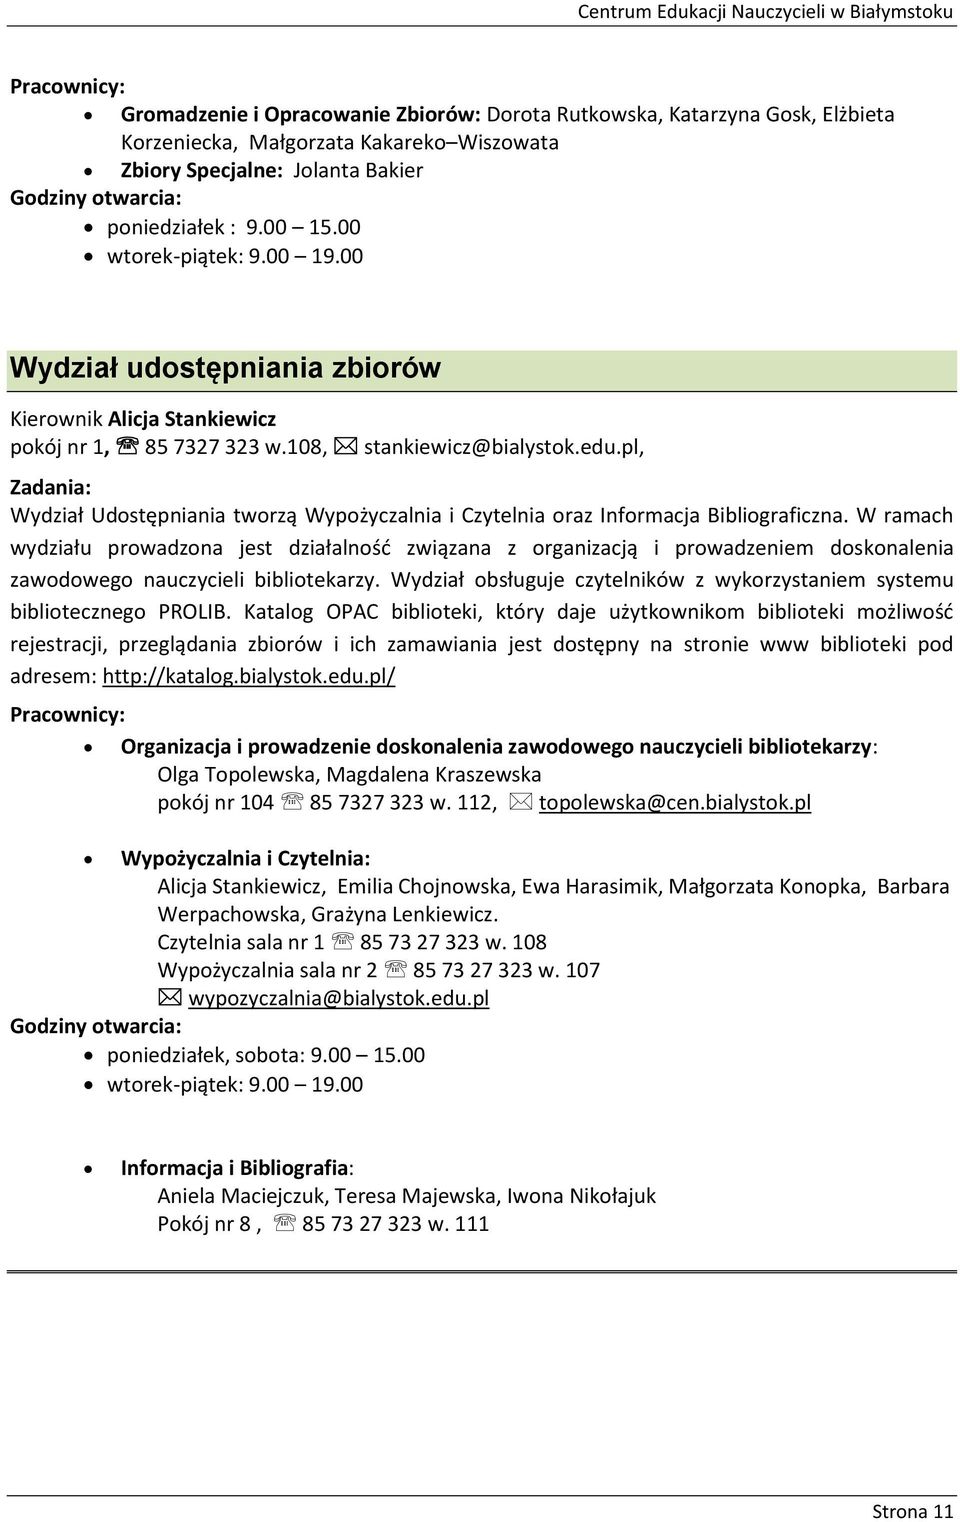 edu.pl, Zadania: Wydział Udostępniania tworzą Wypożyczalnia i Czytelnia oraz Informacja Bibliograficzna.